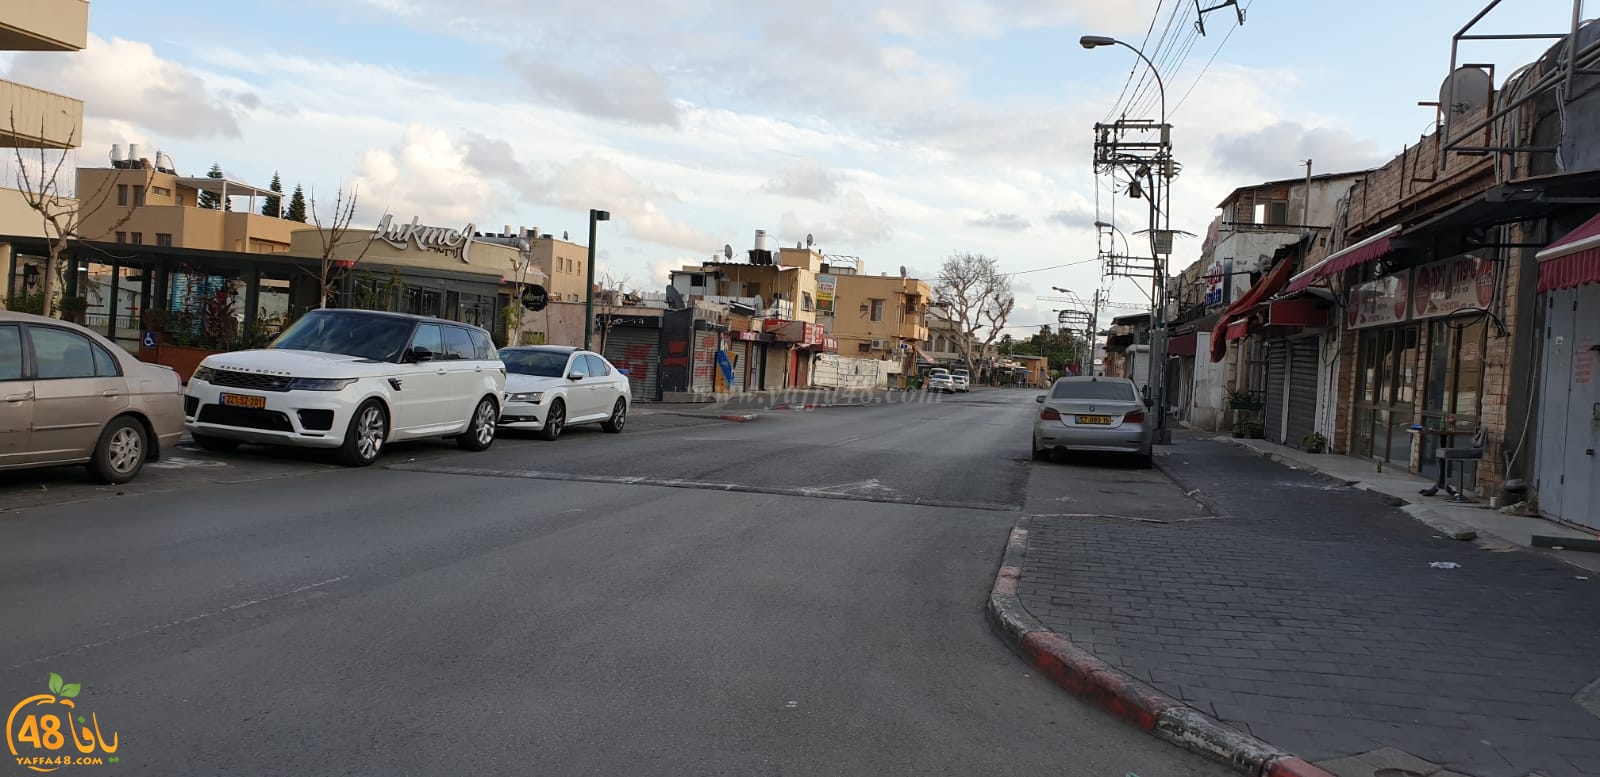  صور: شوارع خالية من المارة - مدينة يافا تلتزم بقرار حظر التجوّل 